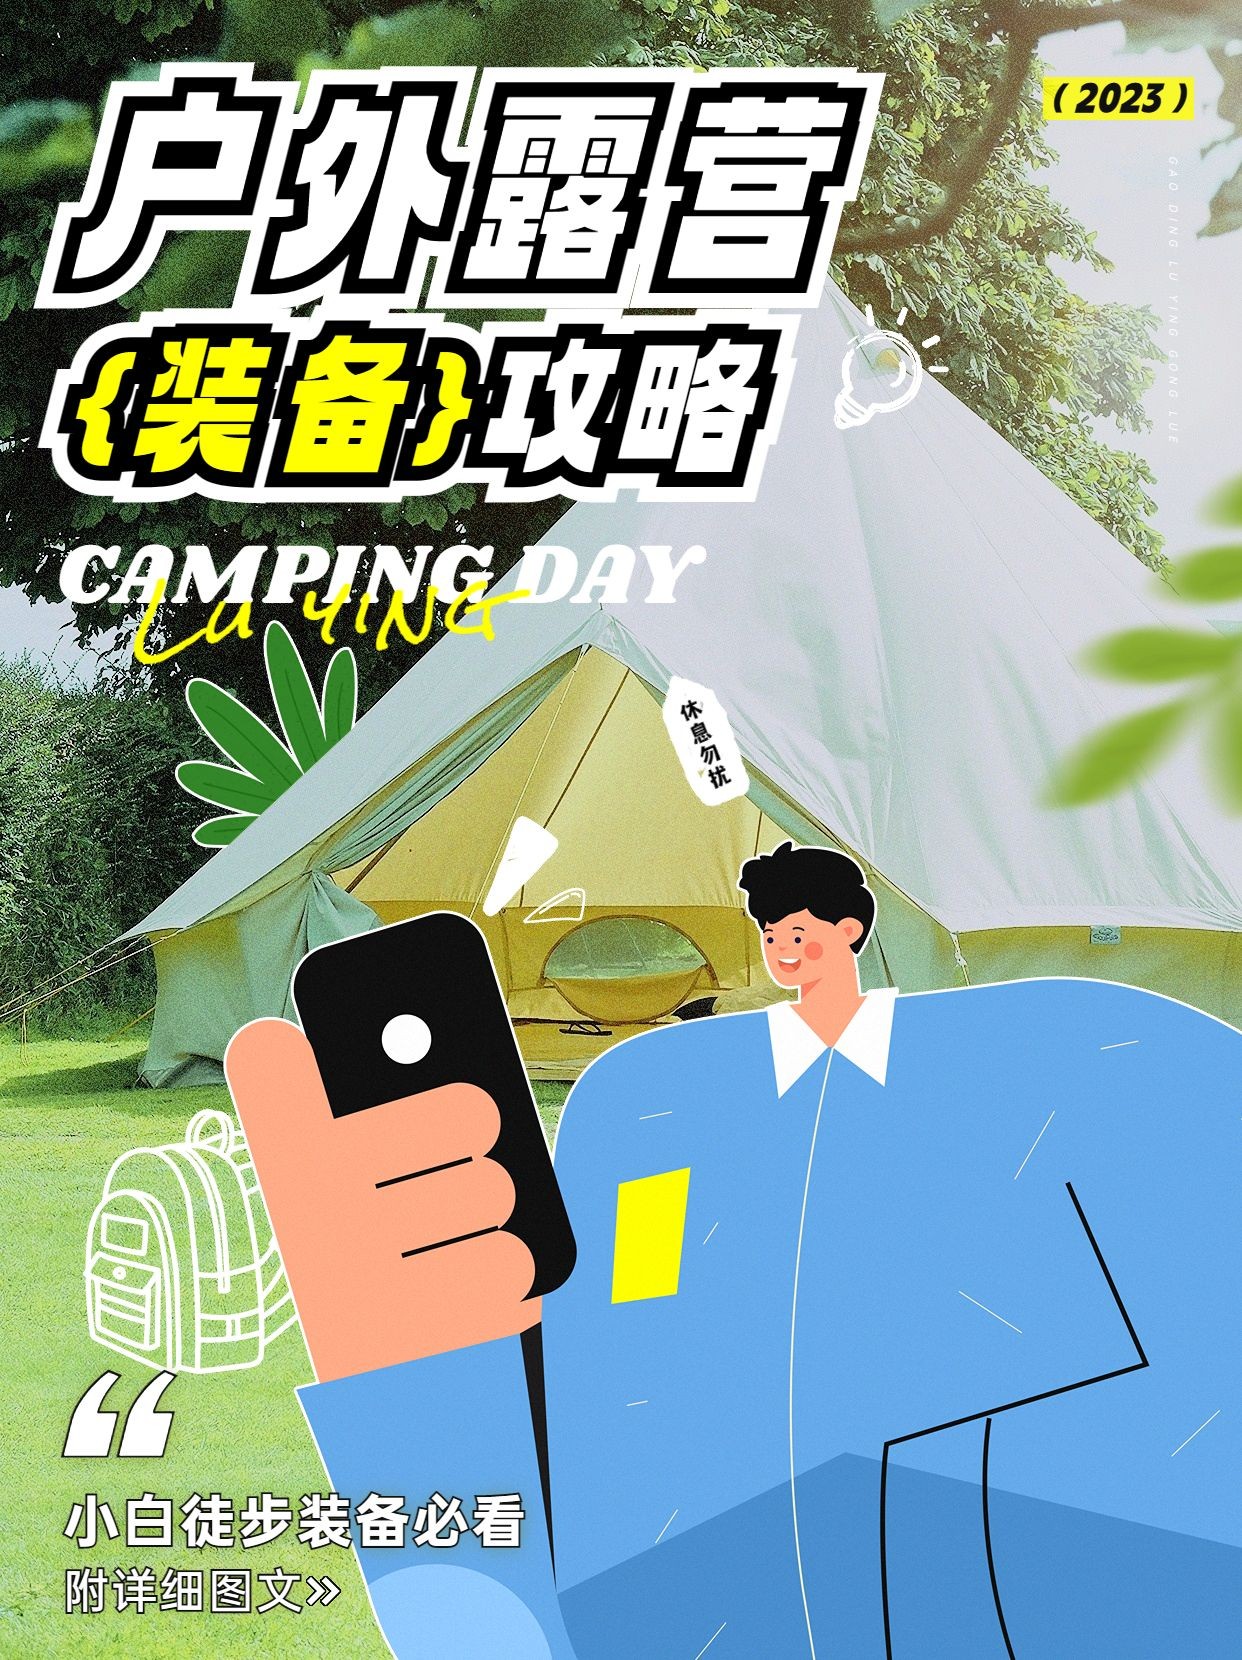 旅游户外露营装备攻略卡通涂鸦风小红书封面